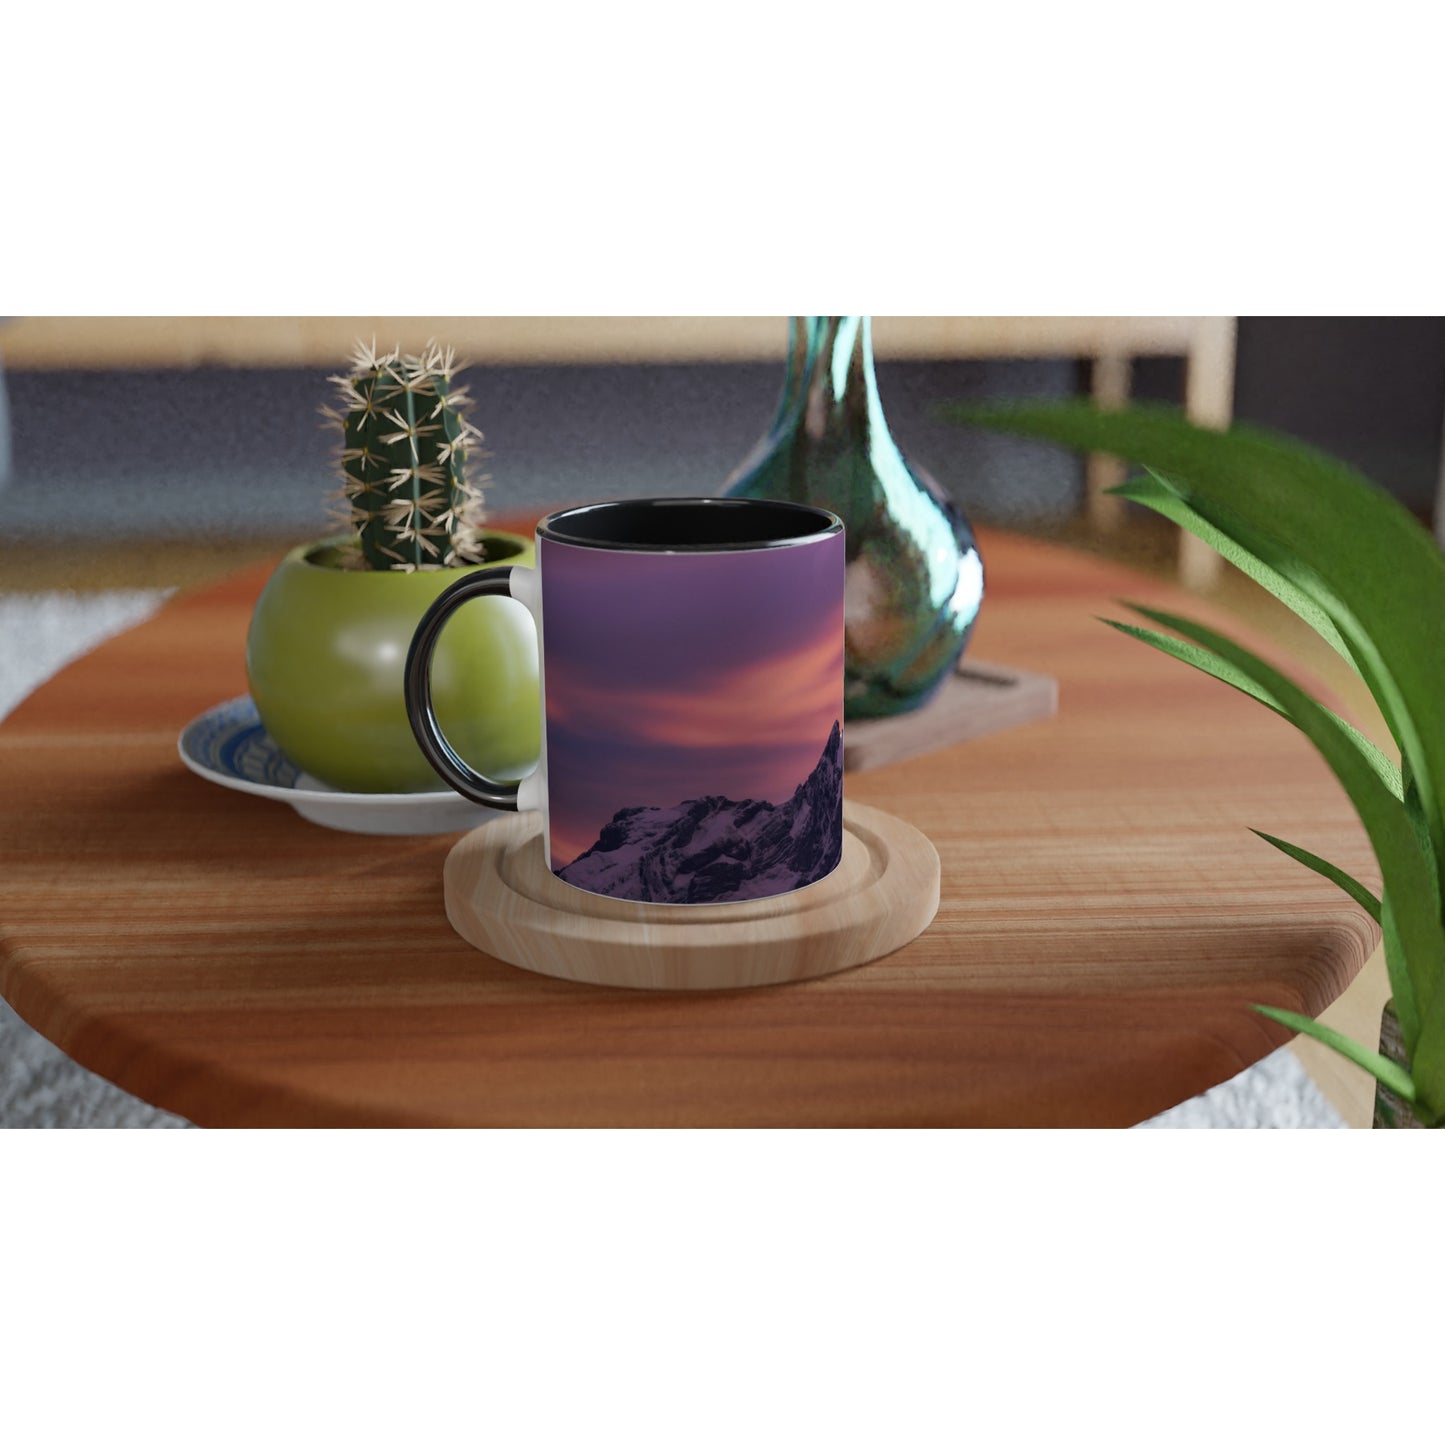 Pilatus in the evening light ceramic mug - colored rim and handle